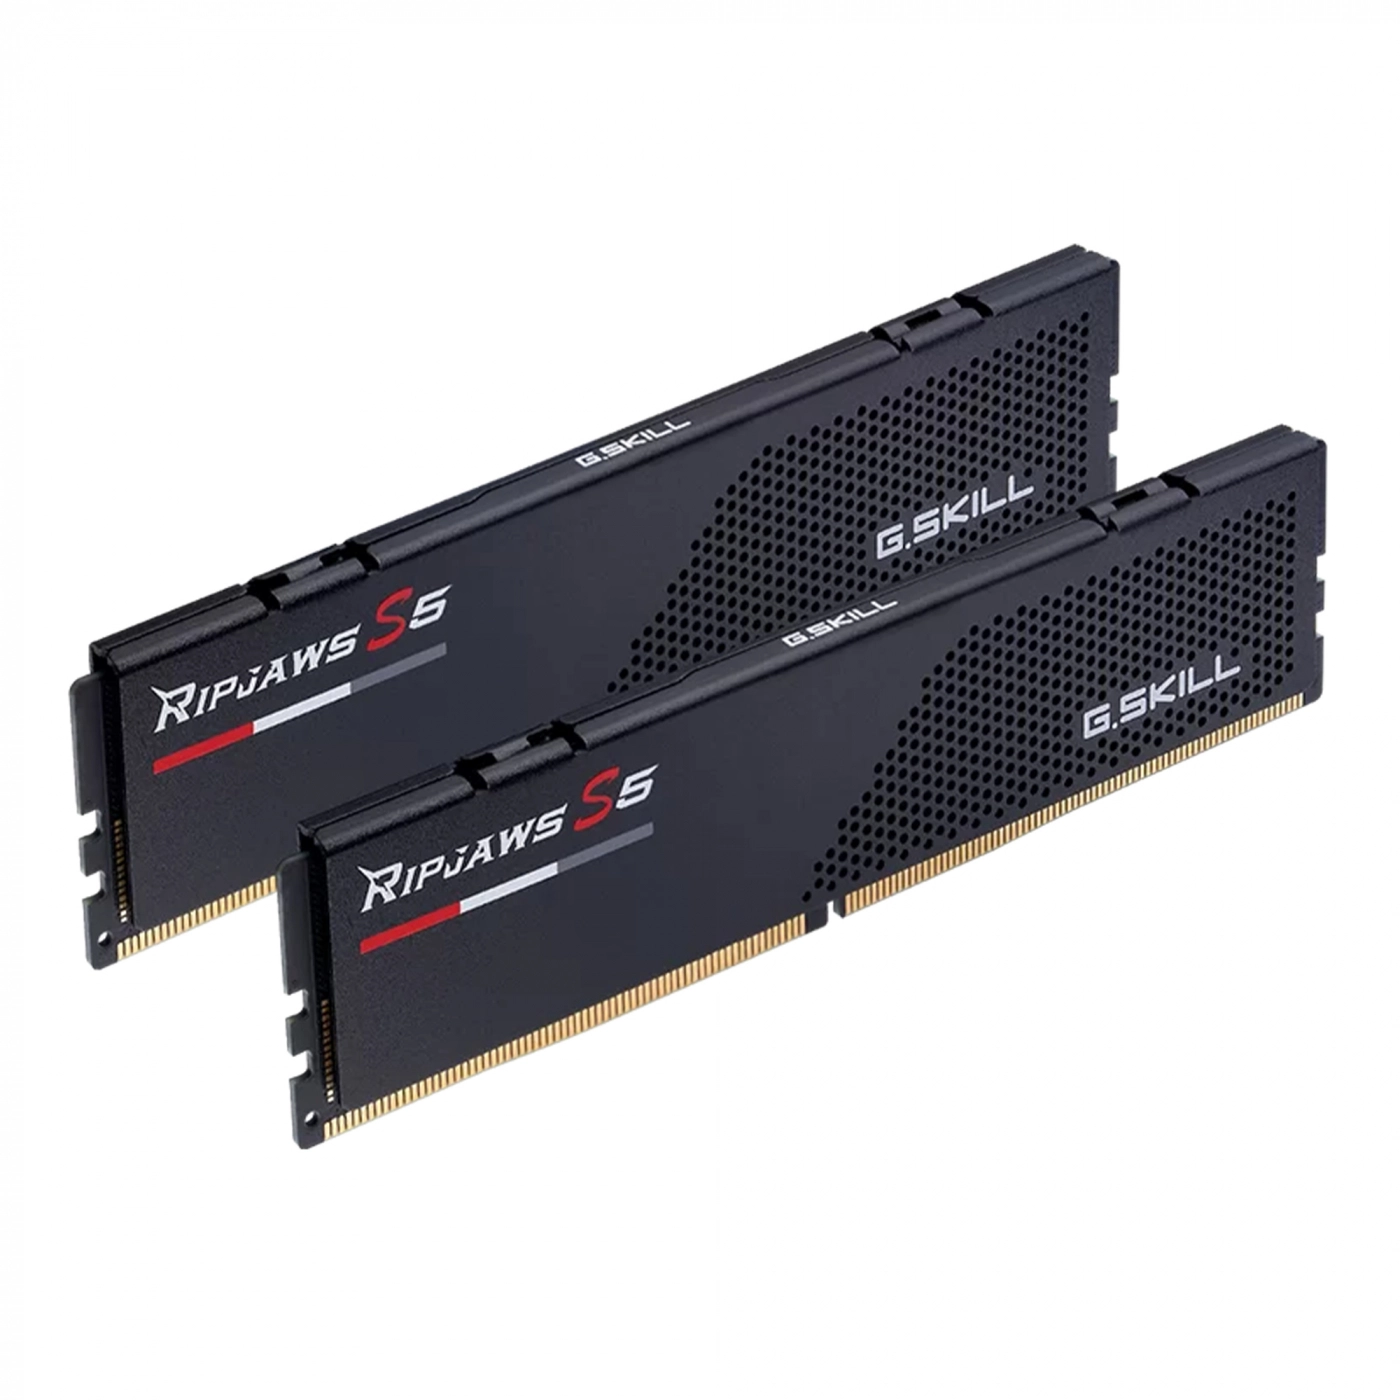 Купить Модуль памяти G.Skill Ripjaws S5 Black DDR5-5200 32GB (2x16GB) CL36-36-36-83 1.2V - фото 1